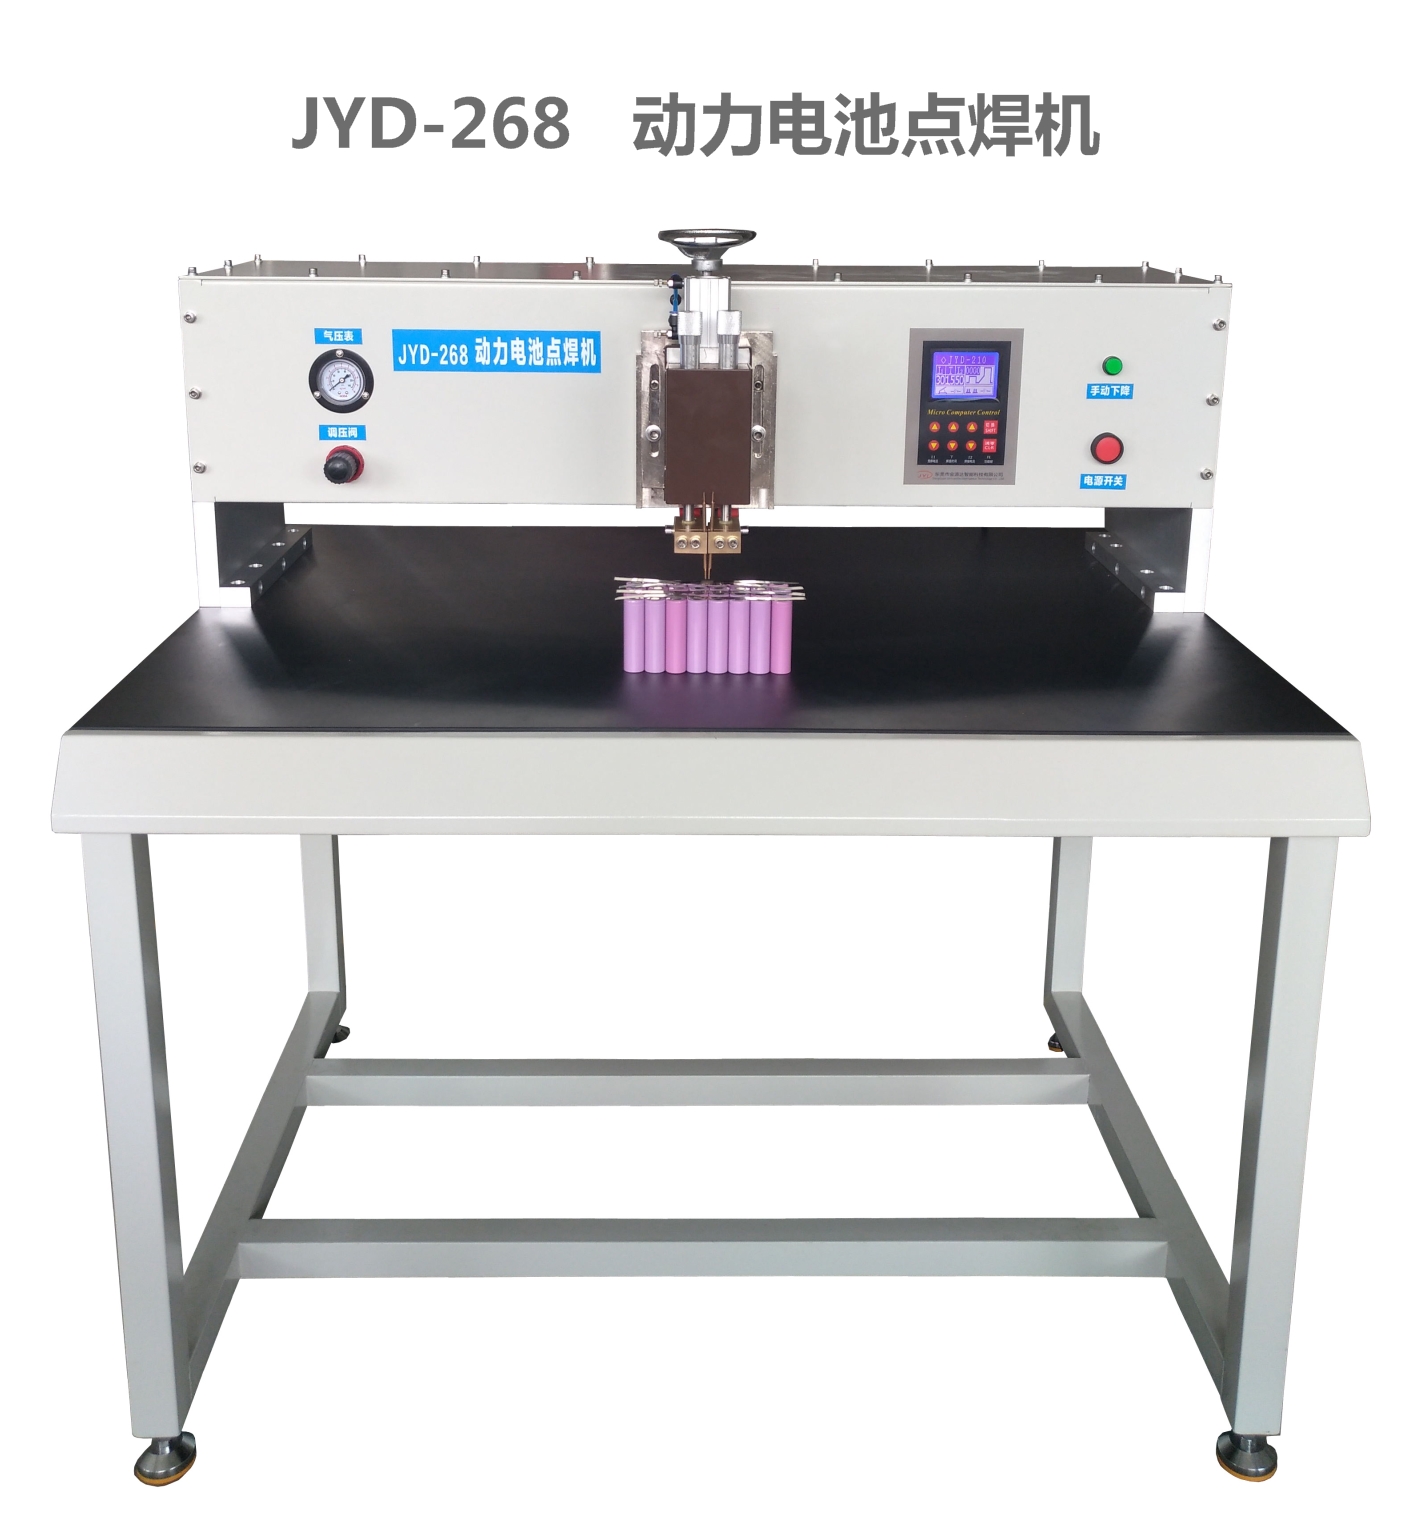 优质供应动力电池点焊机东莞金源达新品热卖 JYD-268动力电池点焊机